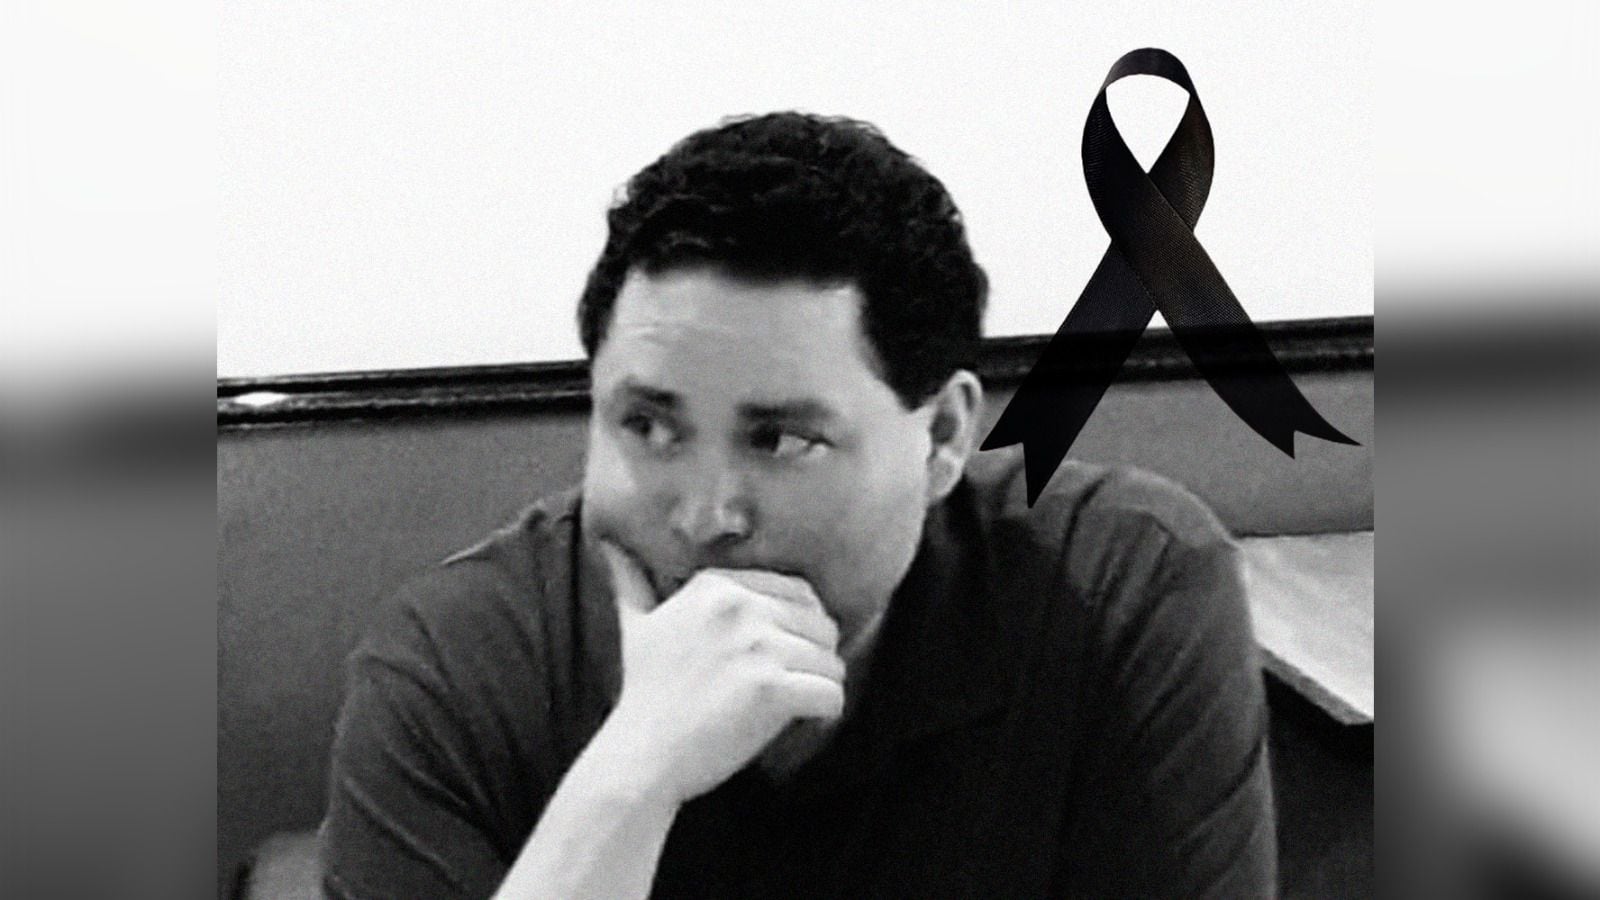 Periodista Víctor Alonso Morales, director del medio digital ‘Realidades’, es asesinado en Chiapas